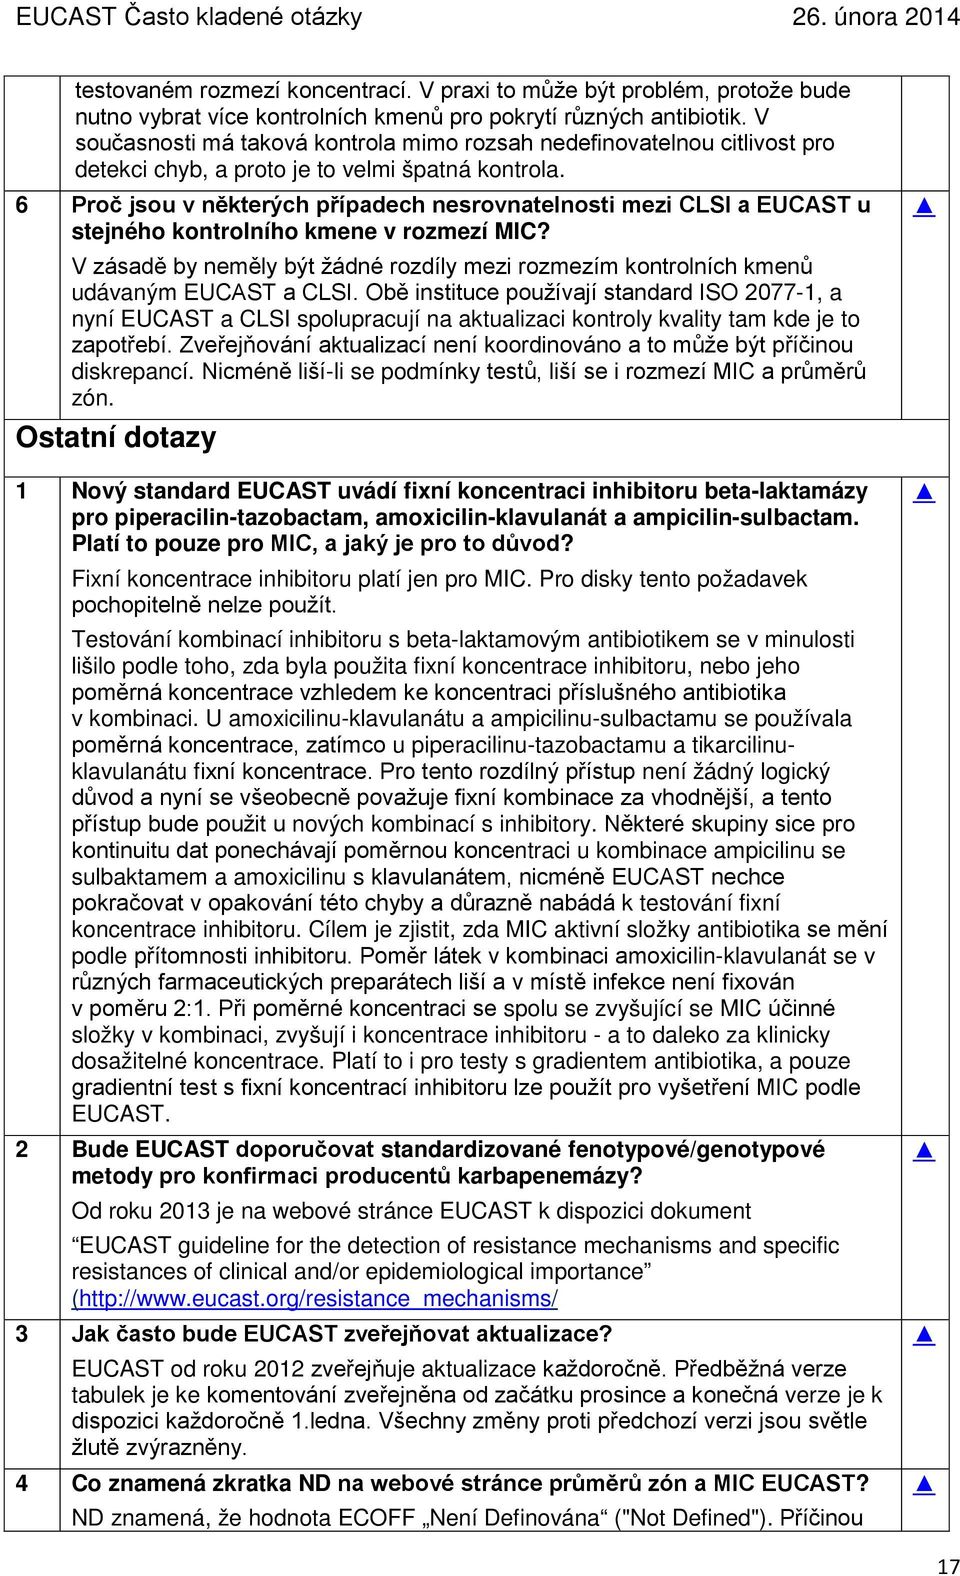 6 Proč jsou v některých případech nesrovnatelnosti mezi CLSI a EUCAST u stejného kontrolního kmene v rozmezí MIC?